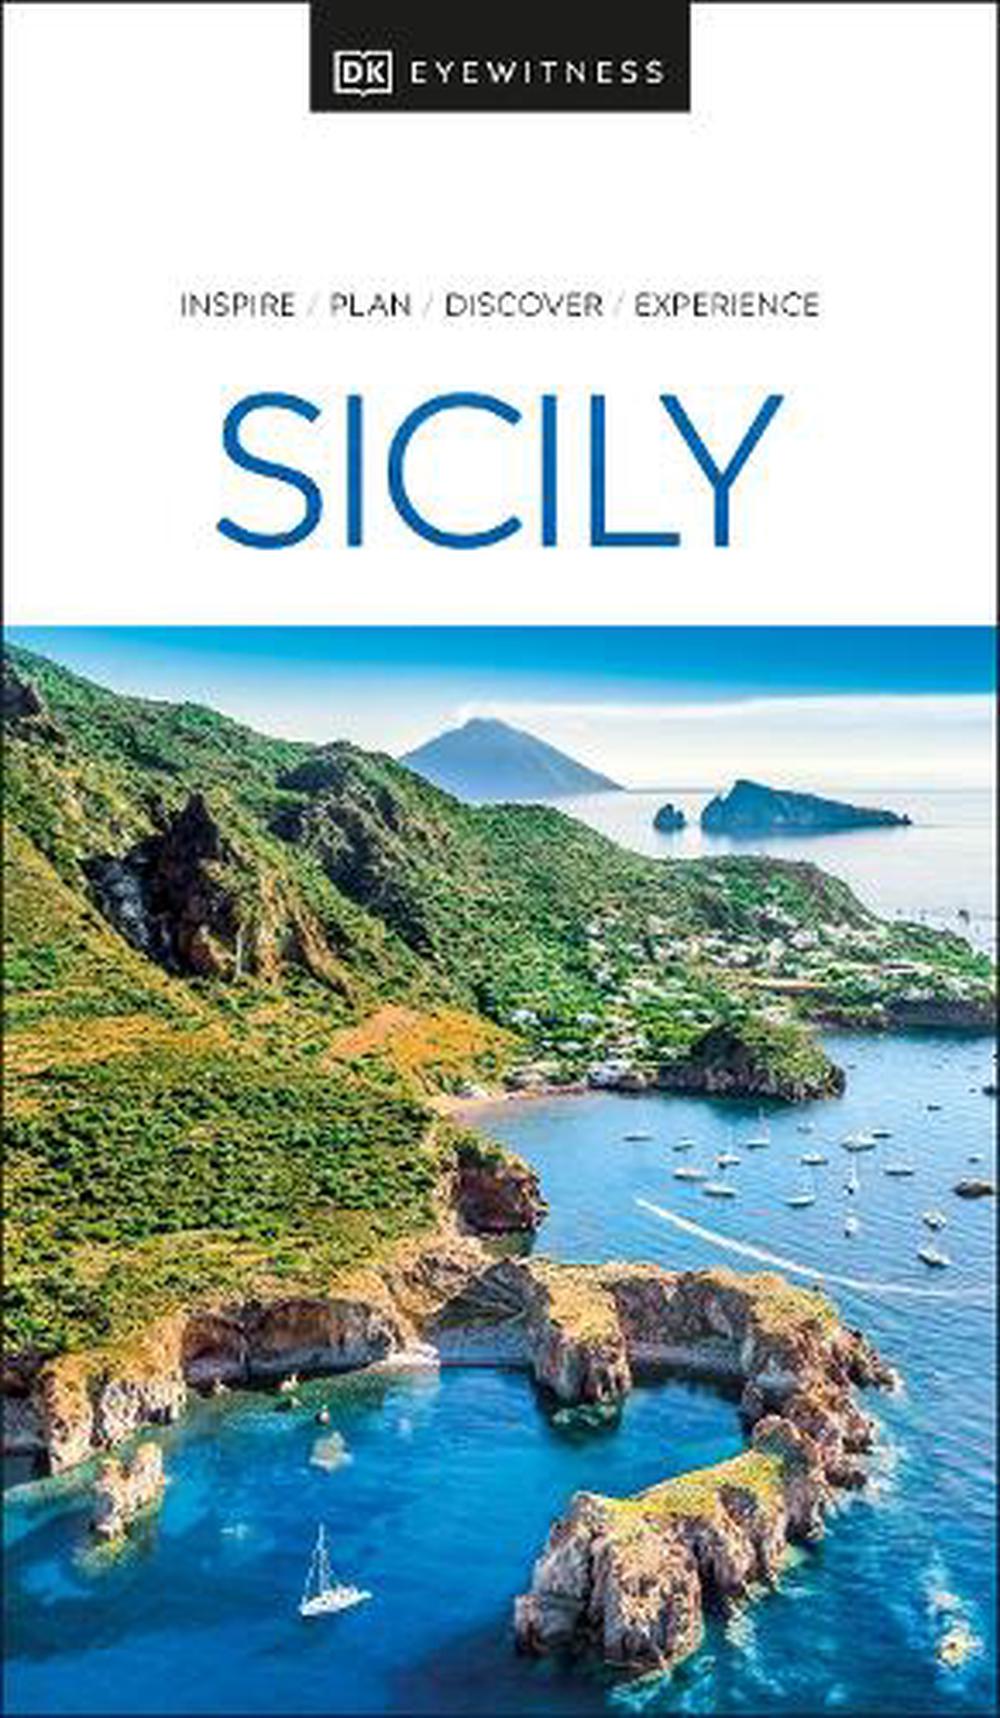 Nile　at　online　DK　Sicily　Buy　Paperback,　9780241565971　Eyewitness　Eyewitness,　DK　by　The